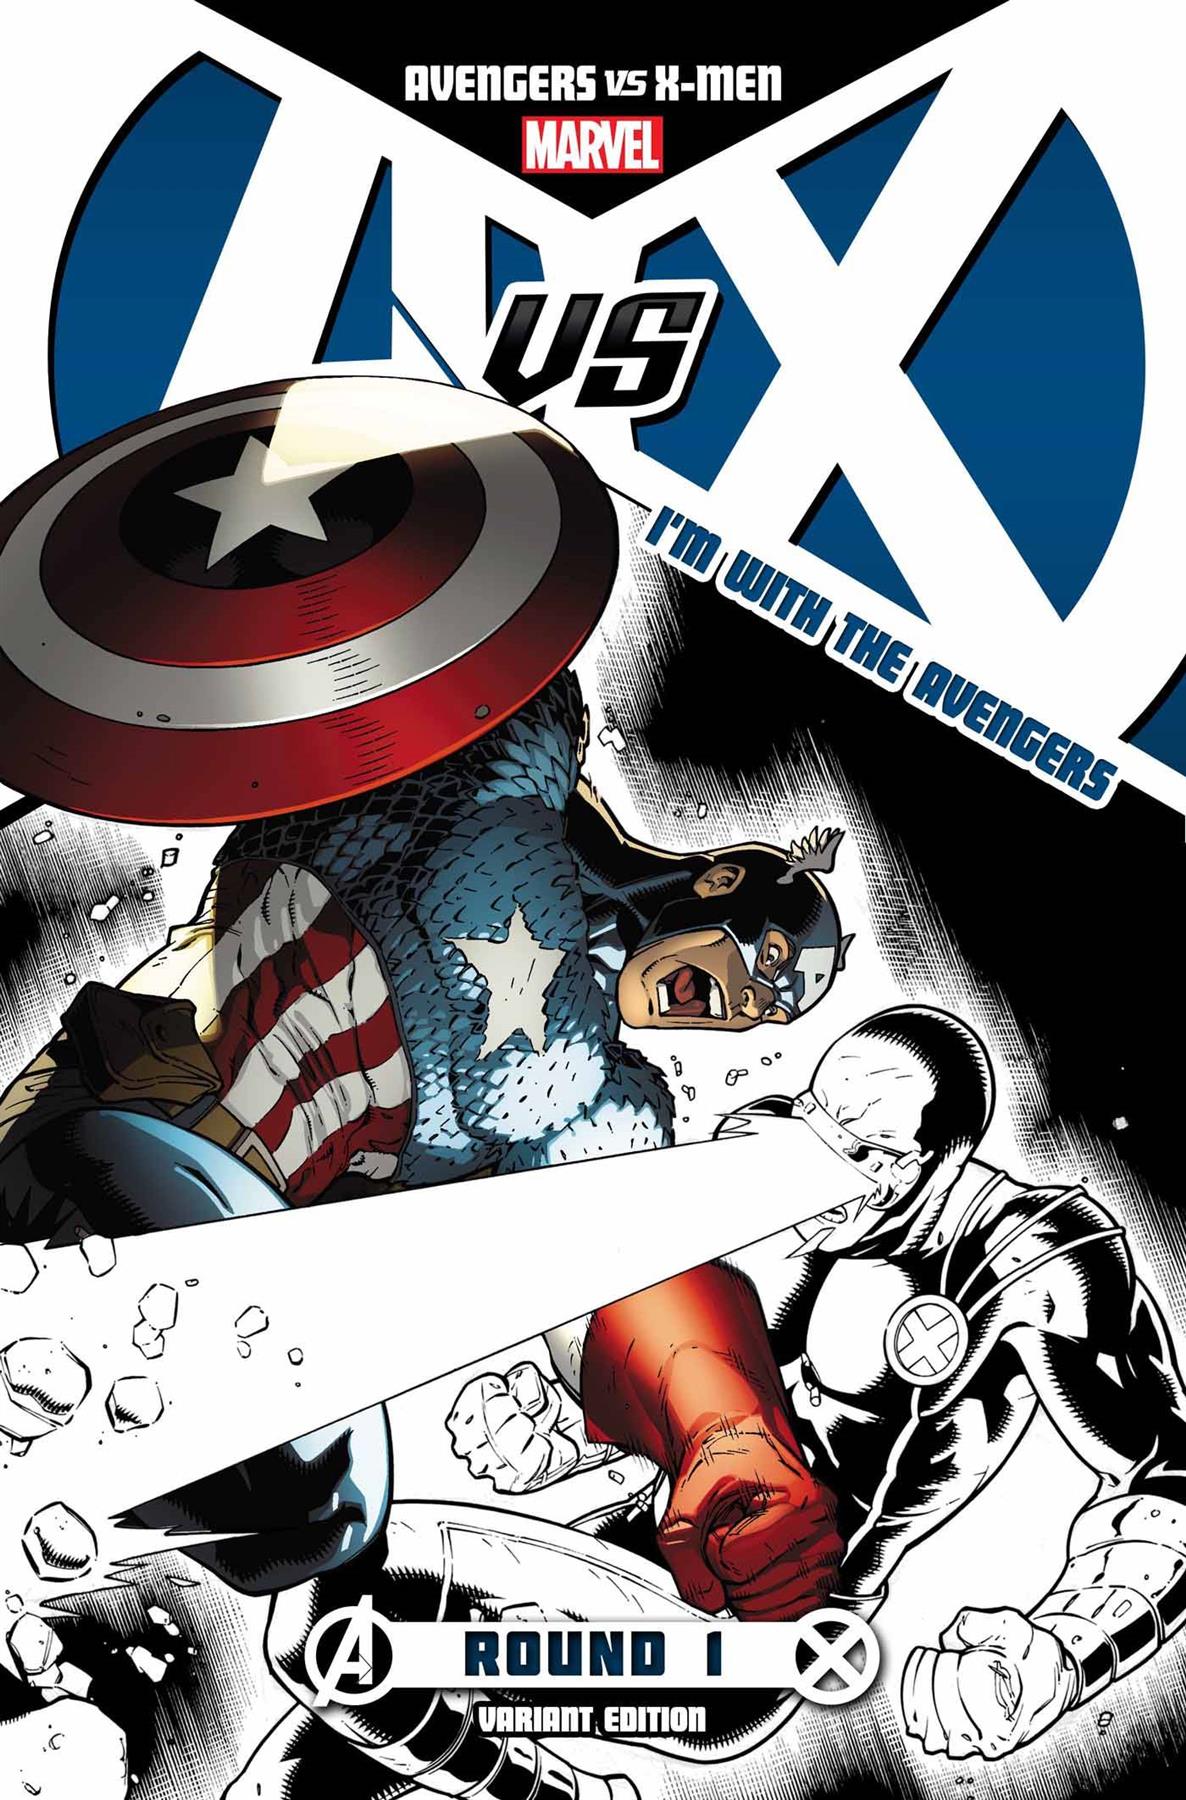 Avengers Vs X-Men #1 Avengers Team Store Var AVX Marvel Comics Comic Book